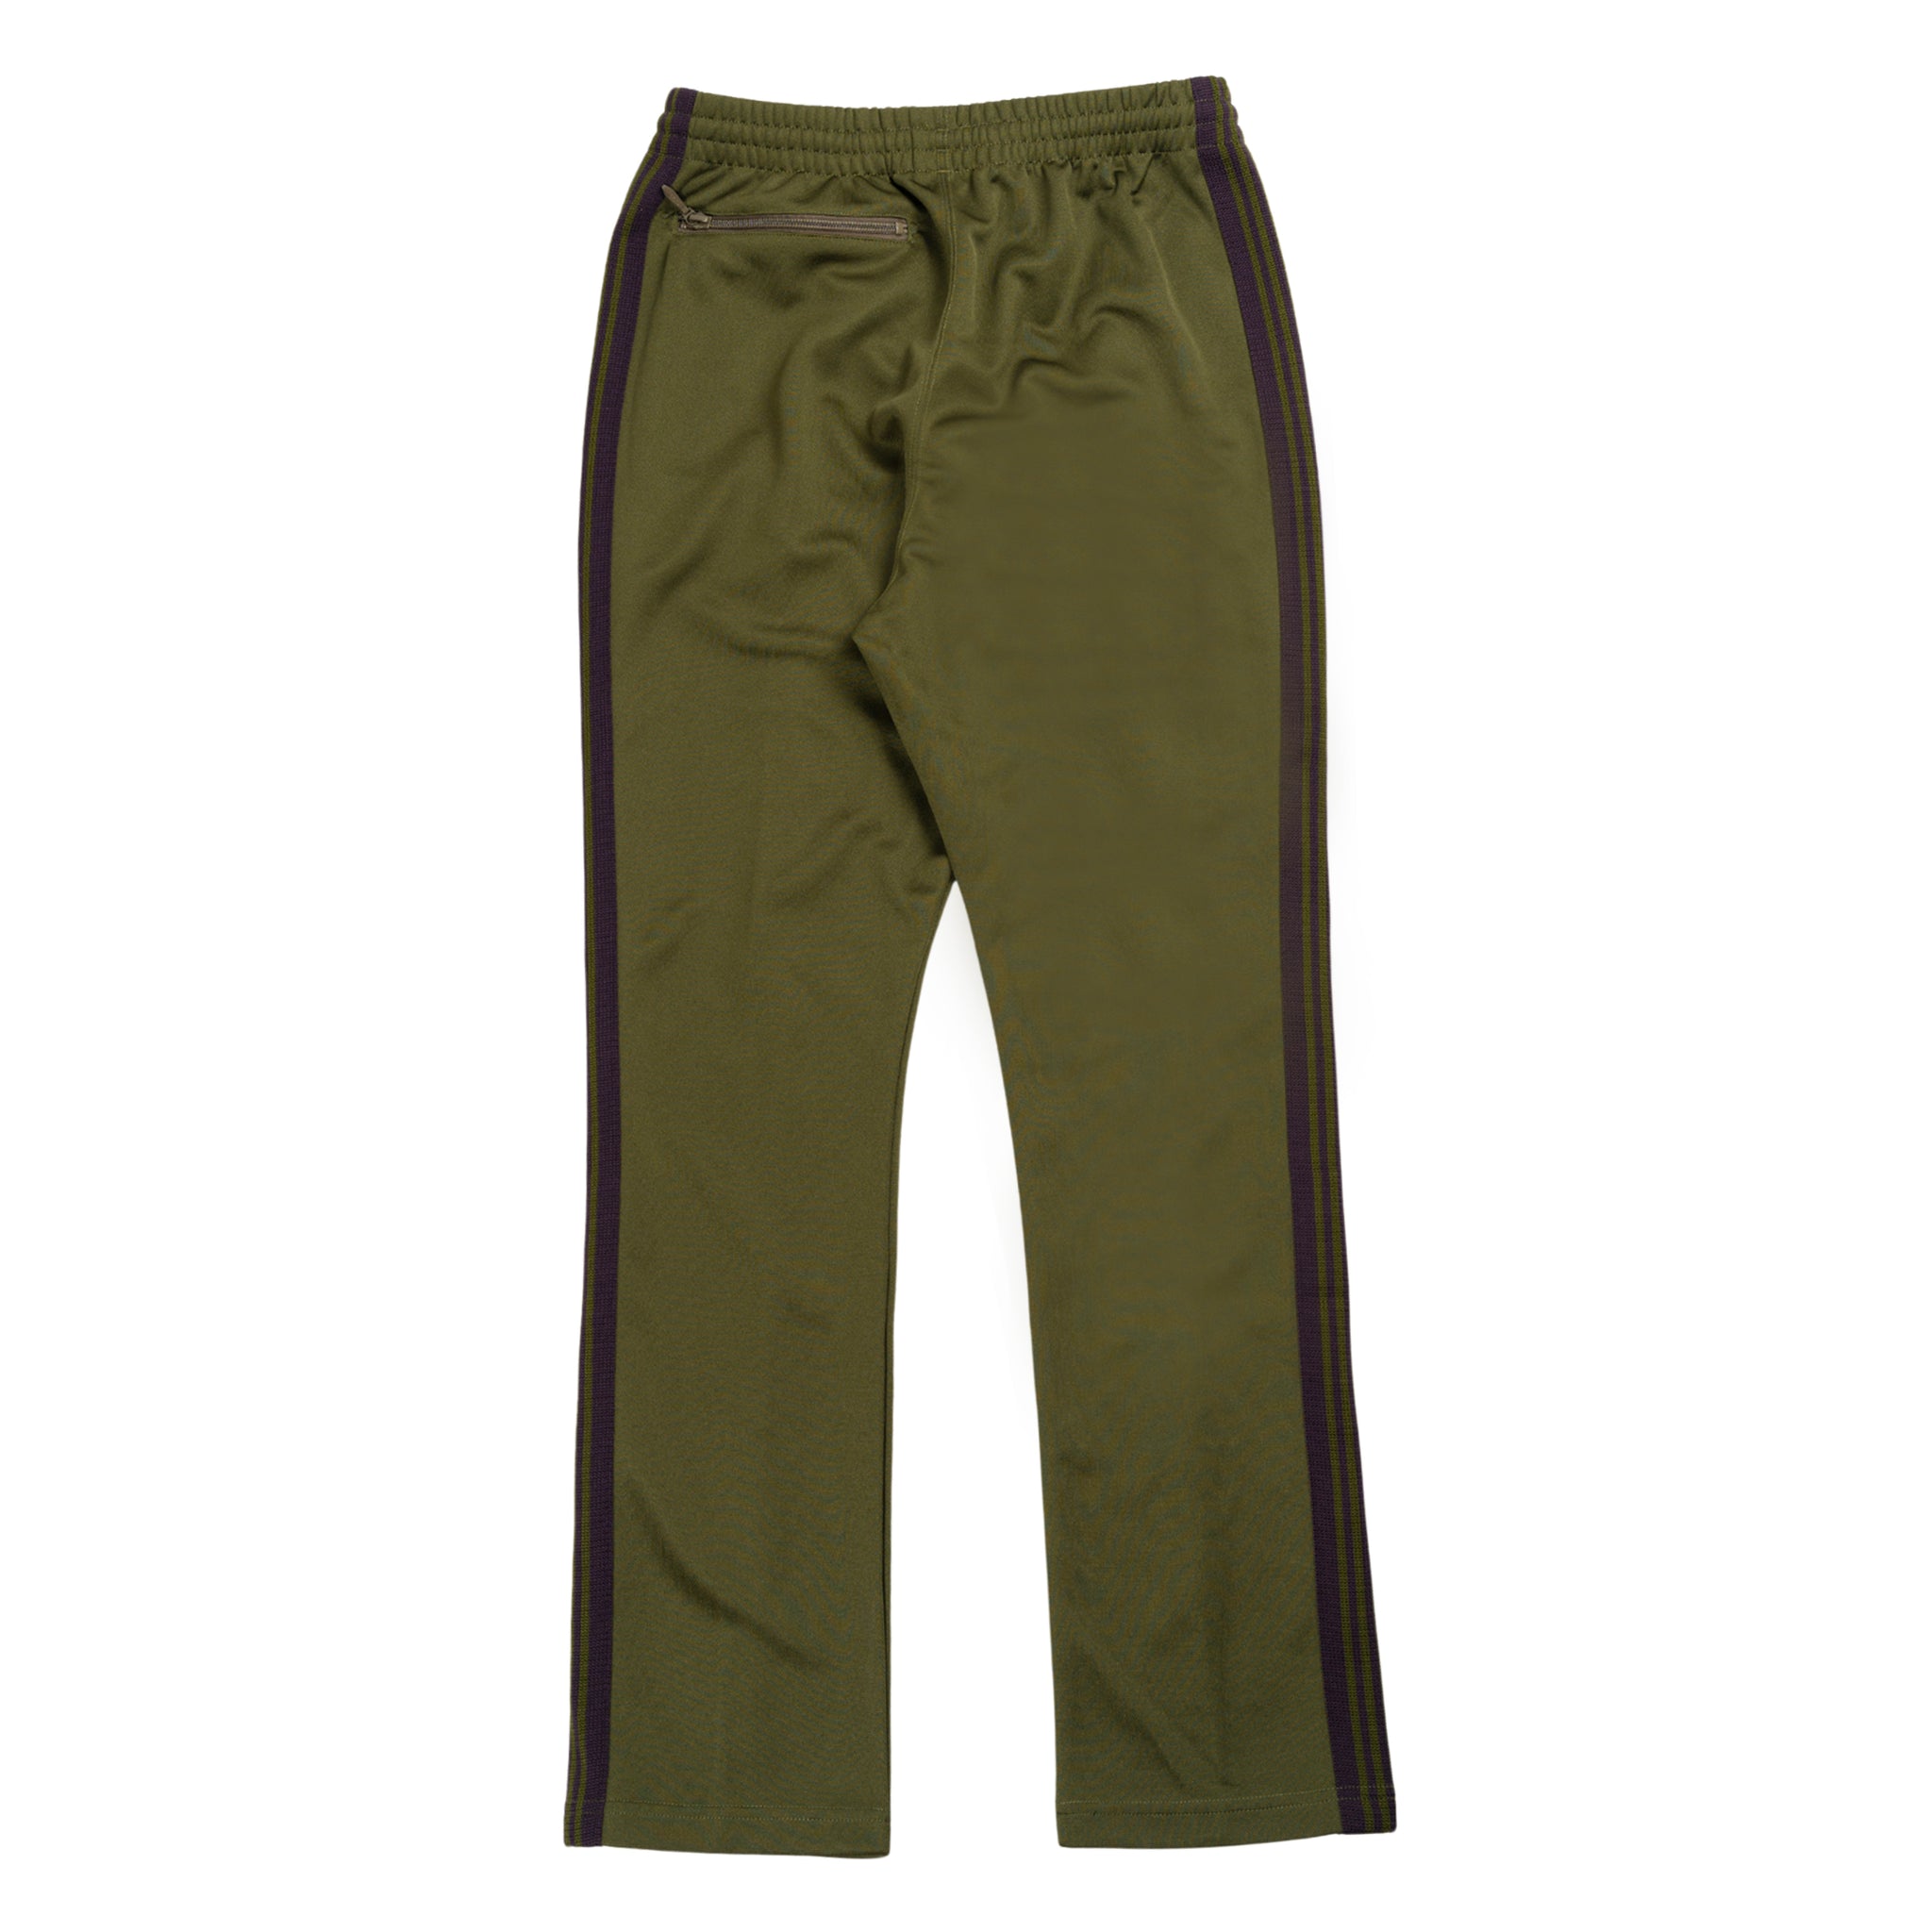 Narrow pantalone della tuta in verde oliva